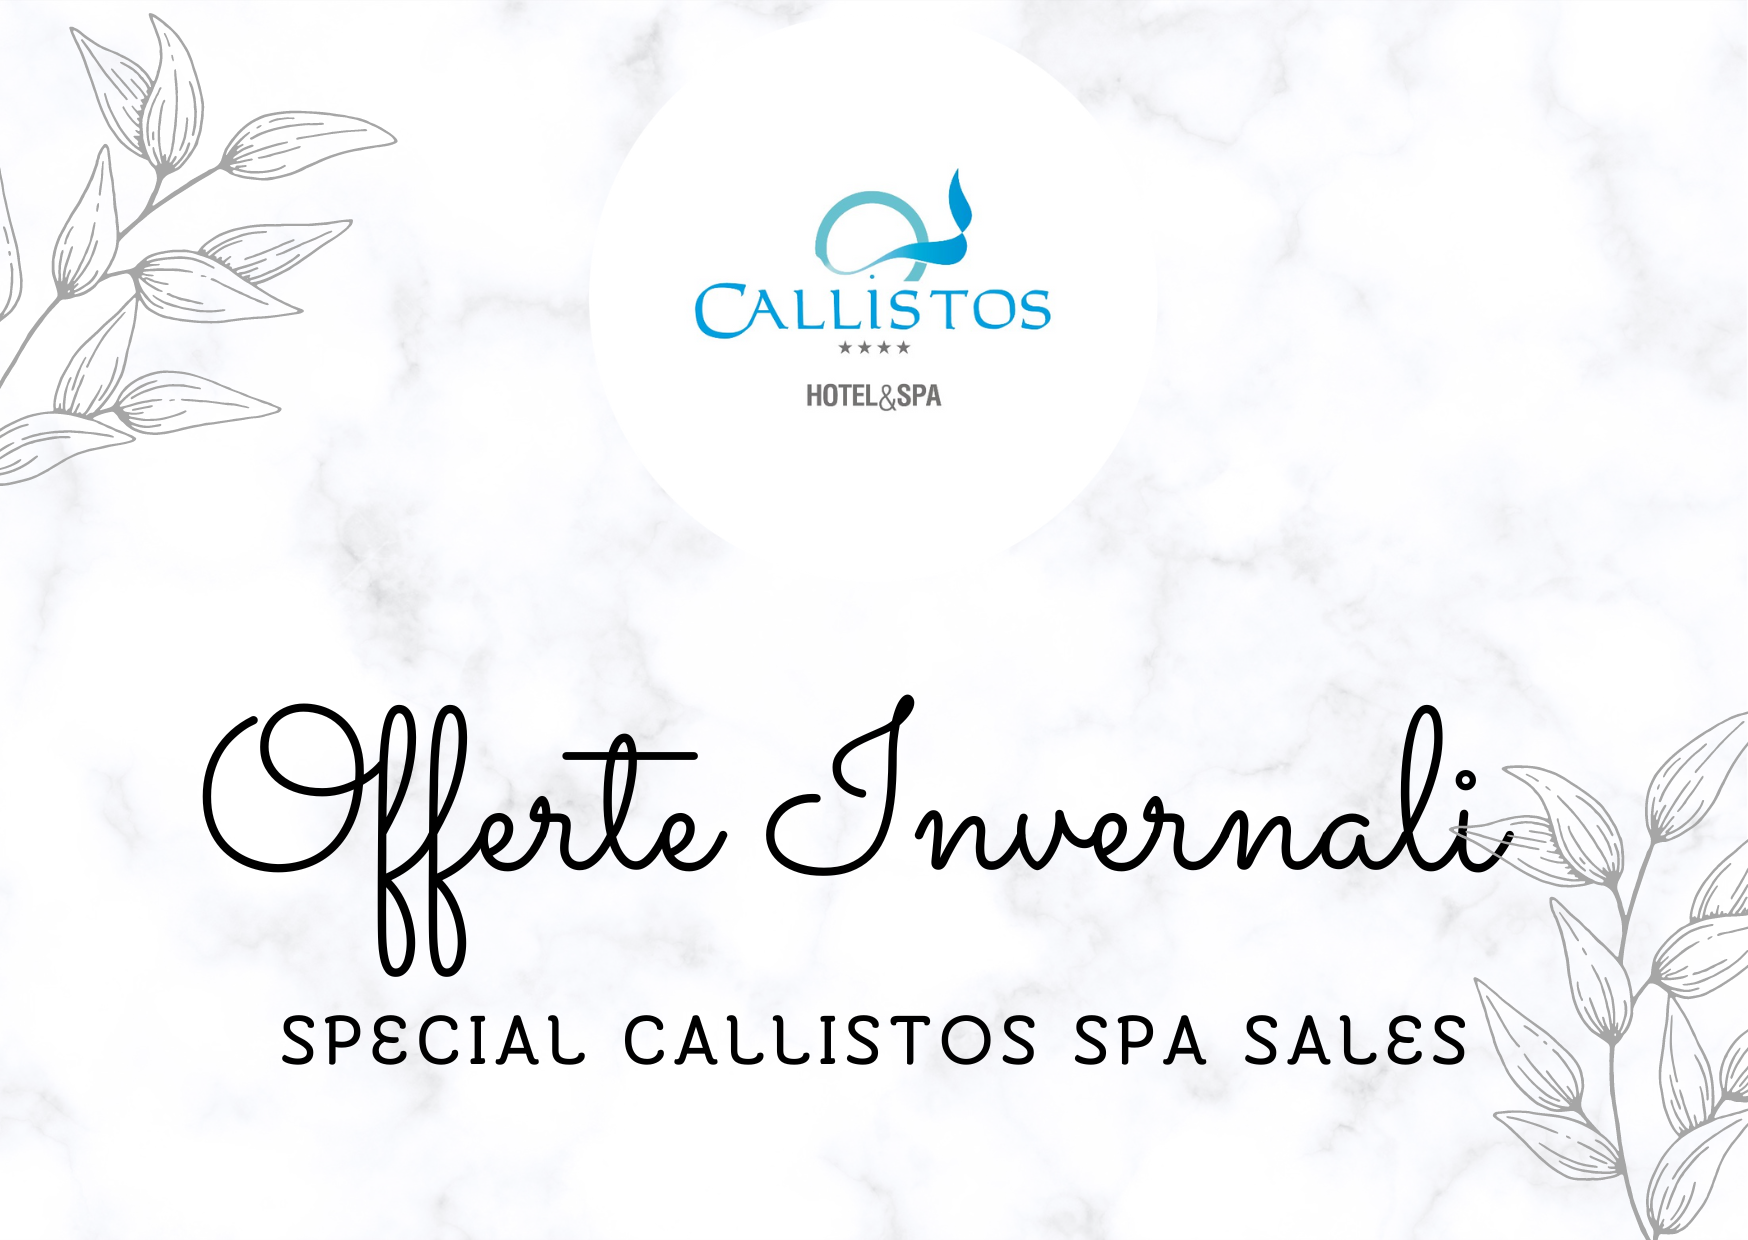 Offerta di Inverno”Special Callistos Spa Sales”